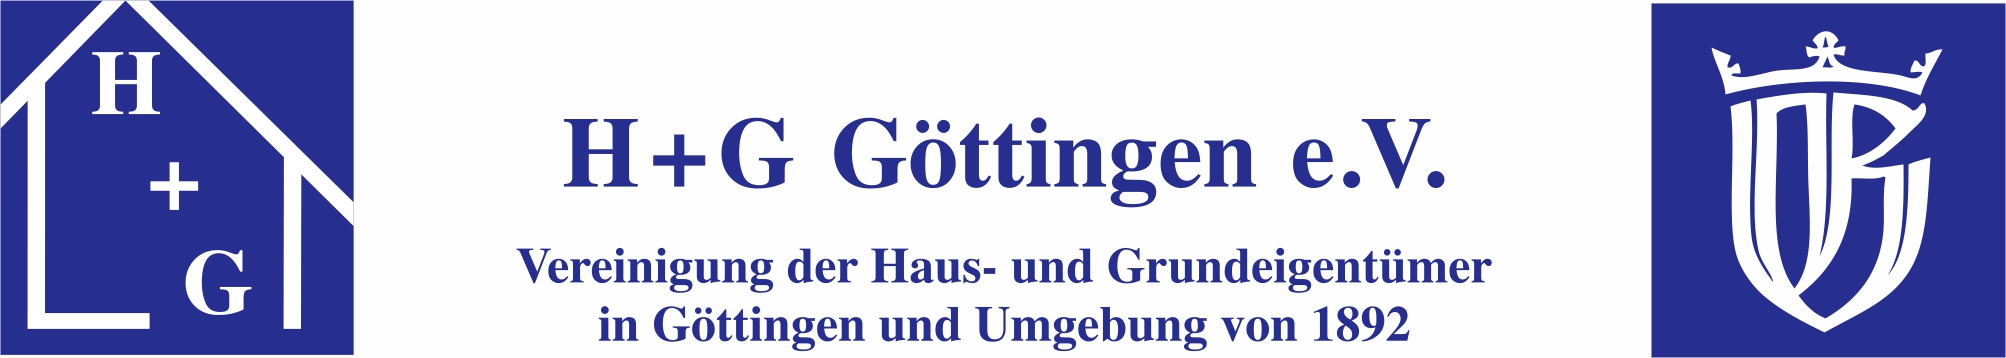 H + G Göttingen Hausverwaltungsgesellschaft für Haus- und Grundeigentum m.b.H. Logo